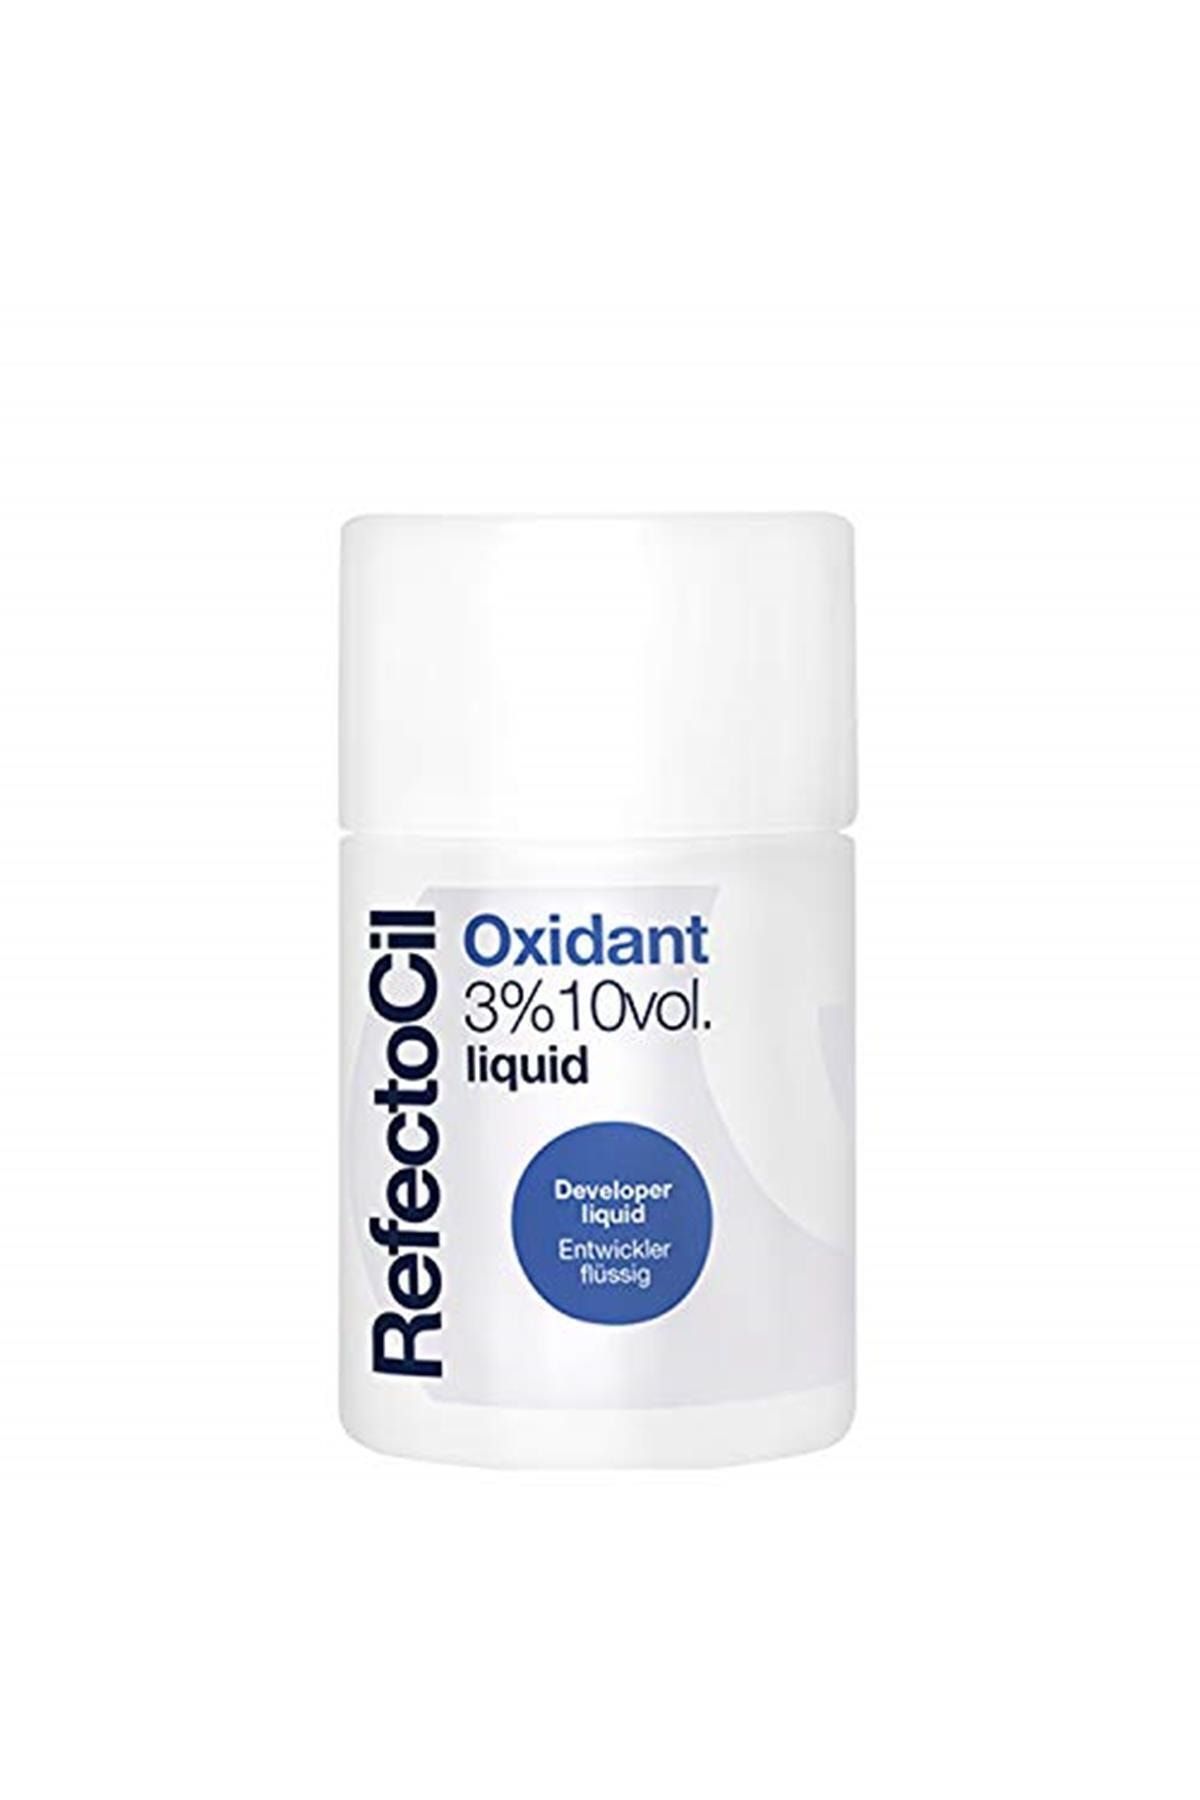 Refectocil Marka: Oxidant 3%10 Volum Liquid 100 Ml Kategori: Saç Boyası